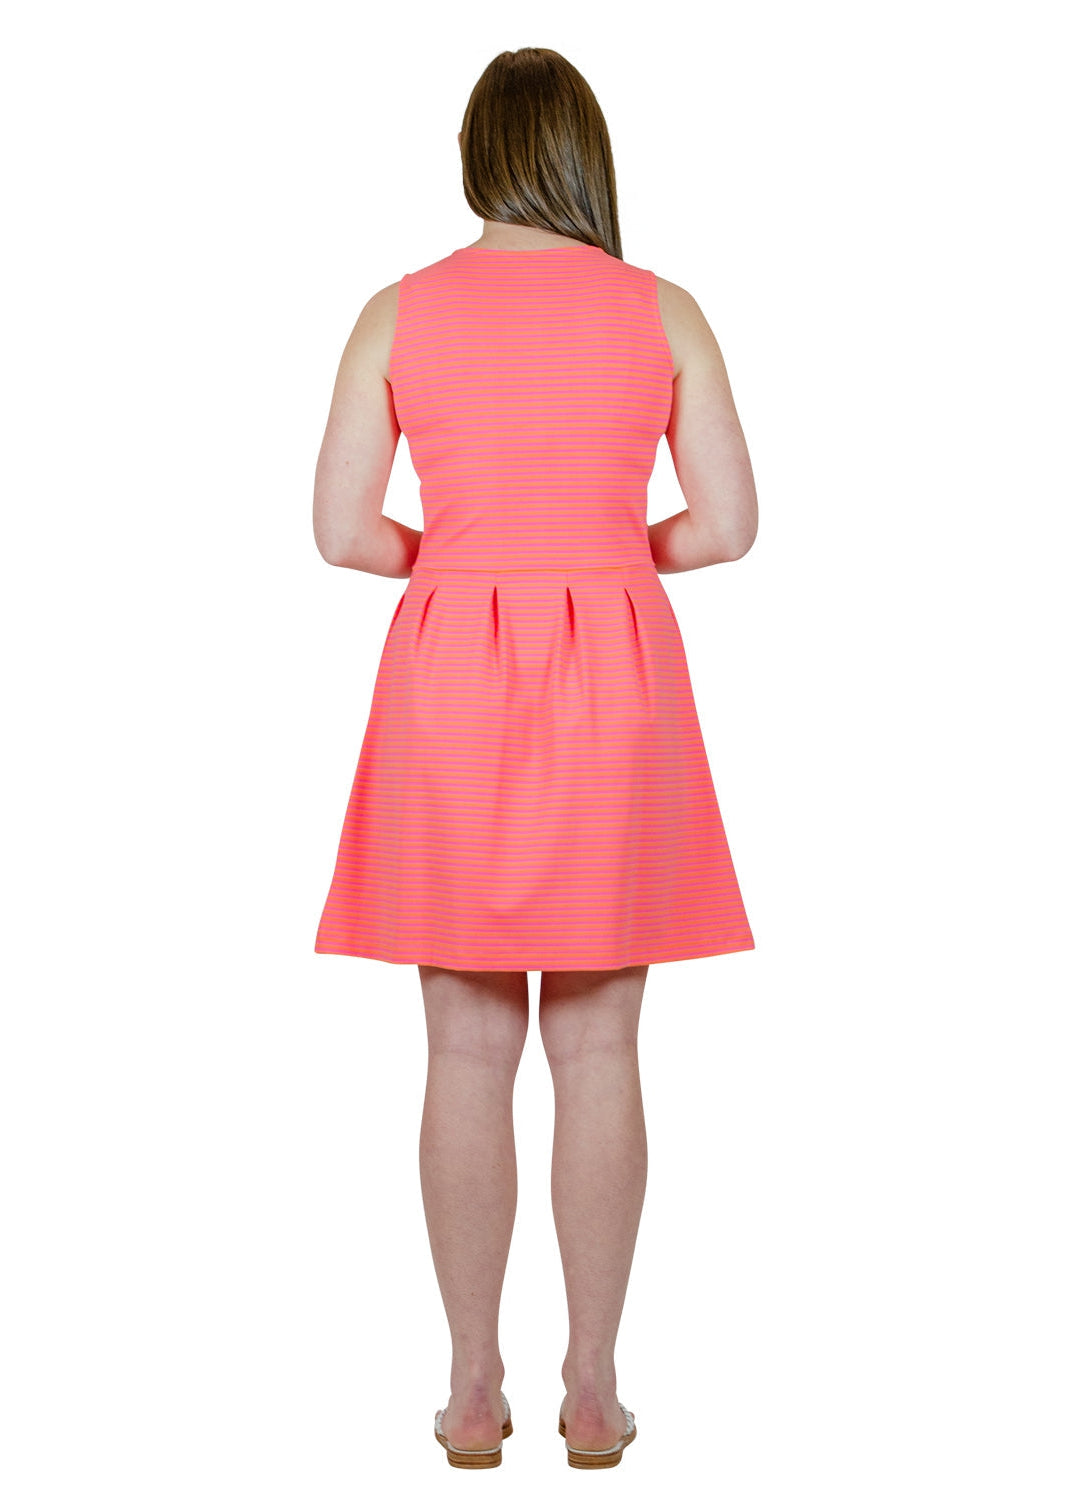 Boardwalk Dress - Juicy Stripe Pink/Orange - FINAL SALE-2